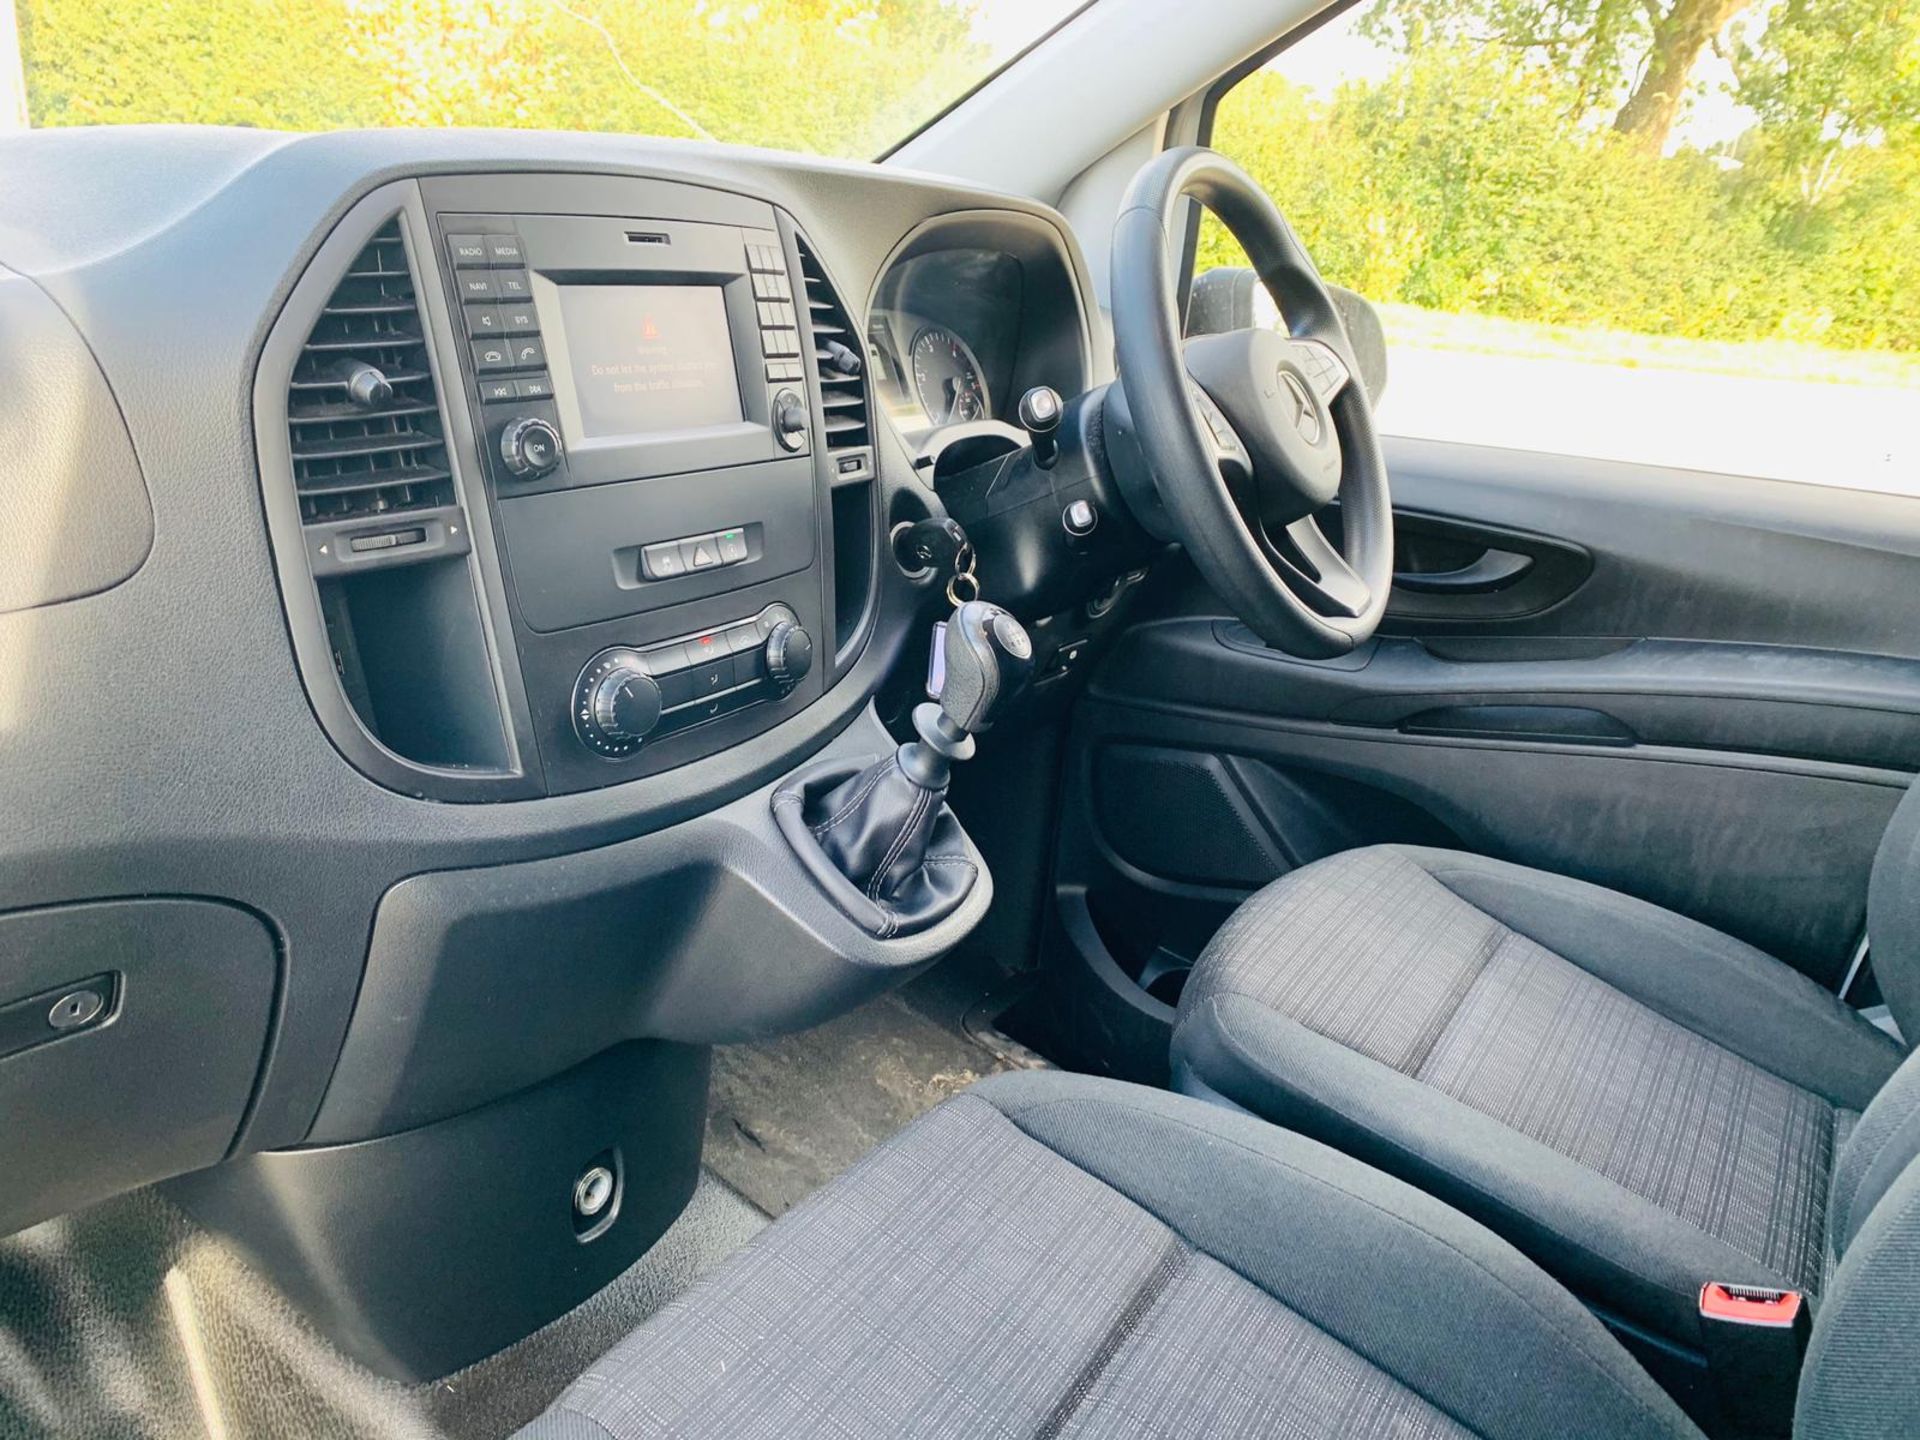 (RESERVE MET) Mercedes Vito 114 2.1 TD Bluetech Fridge Van - 2019 Model - Euro 6y - 1 Owner - Image 16 of 23